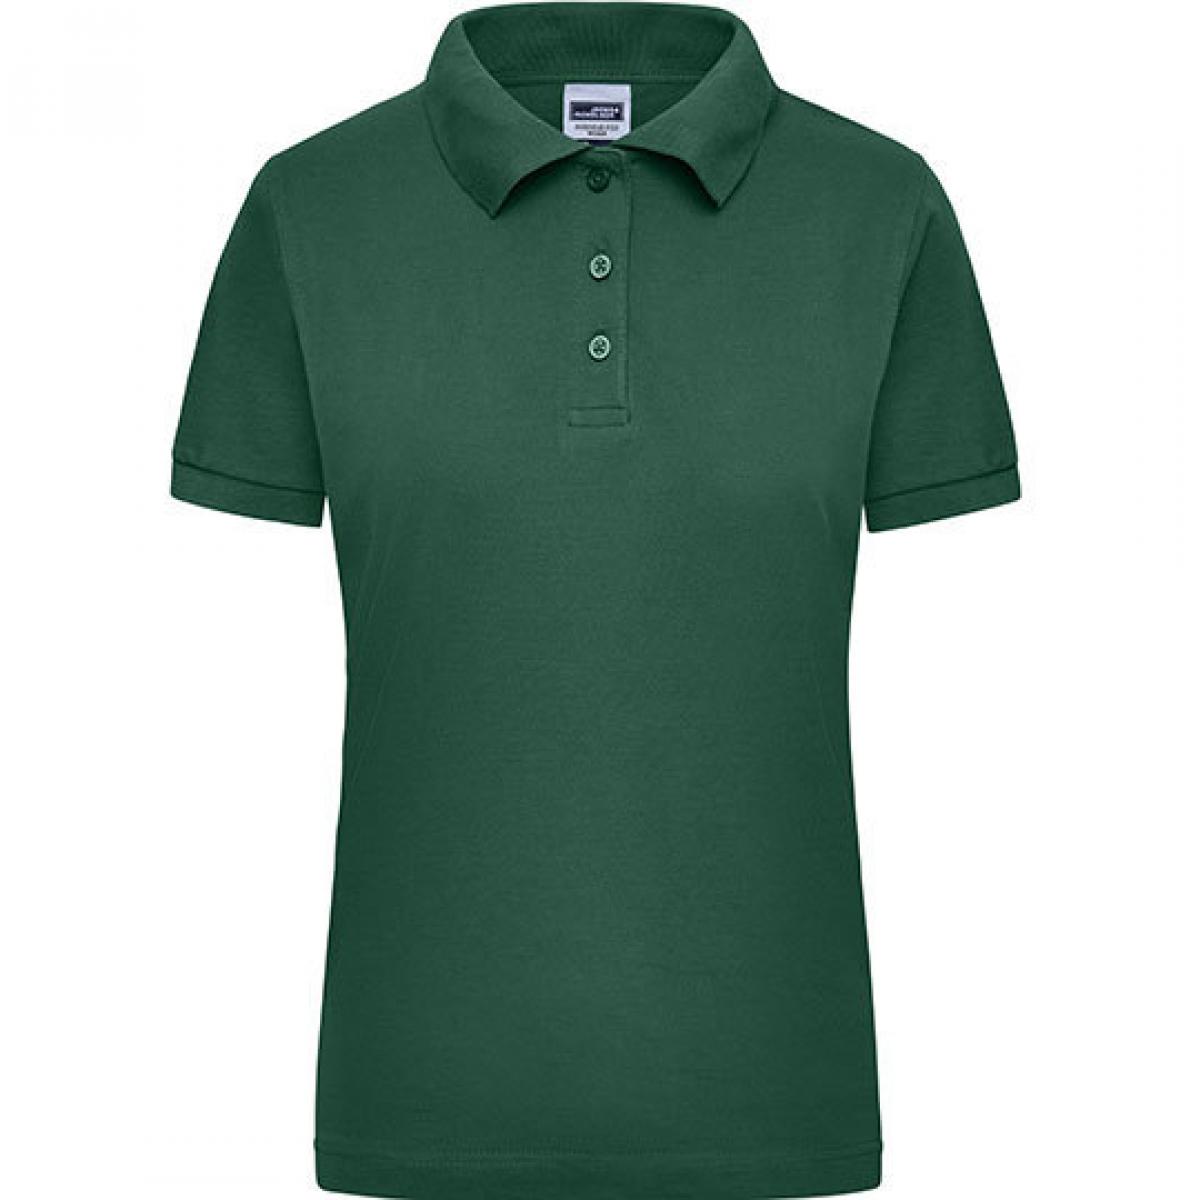 Hersteller: James+Nicholson Herstellernummer: JN 803 Artikelbezeichnung: Damen Workwear Polo / Trocknergeeignet Farbe: Dark Green